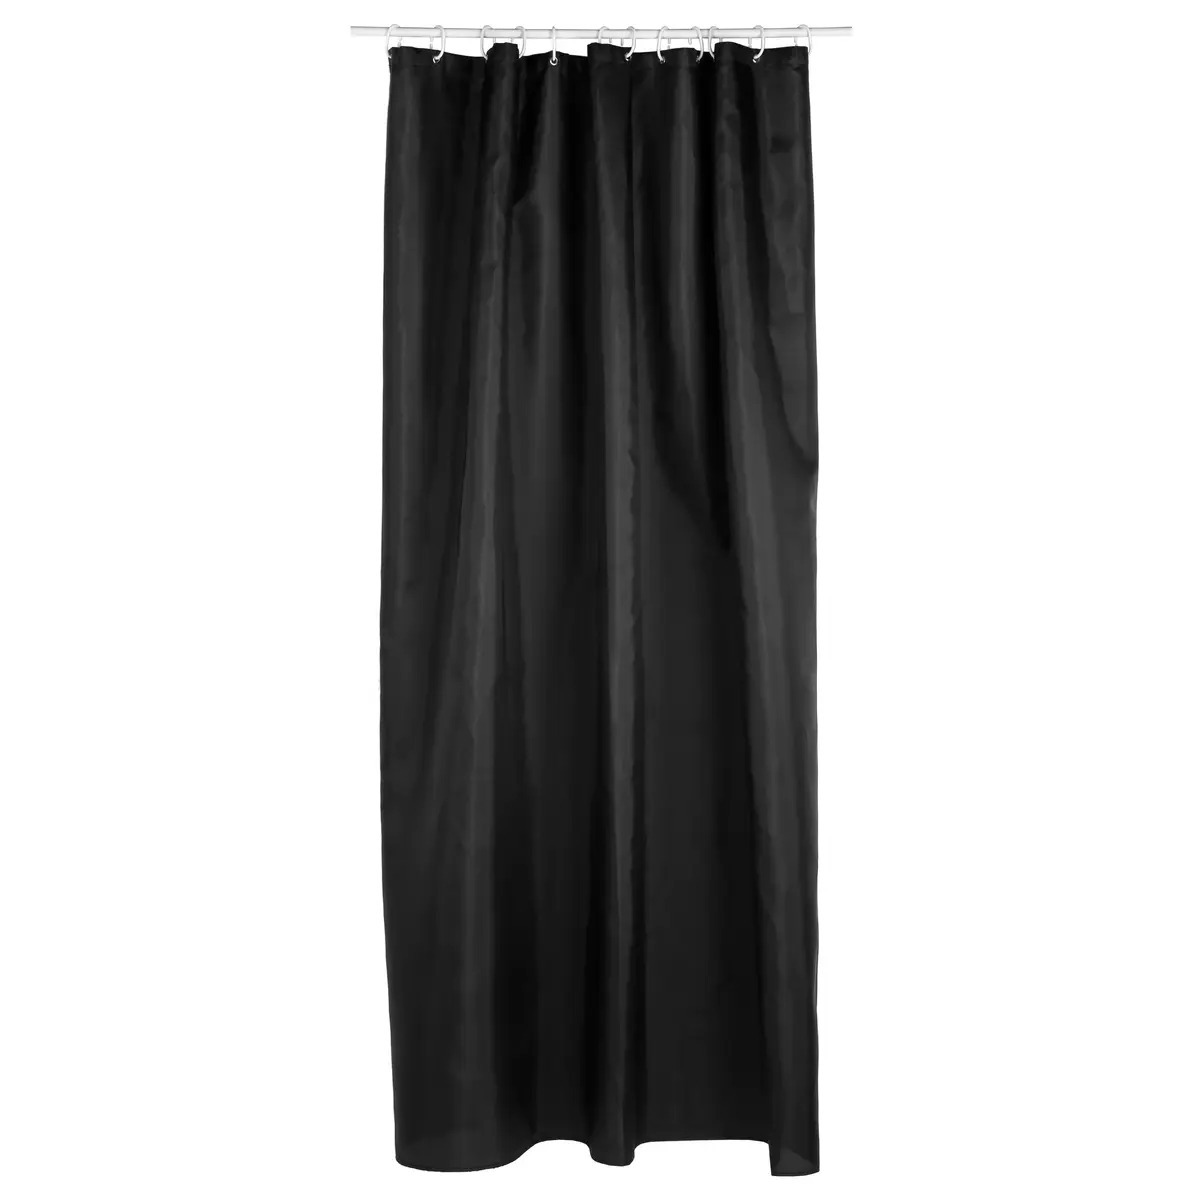 Douchegordijn zwart polyester 180 x 200 cm inclusief ringen